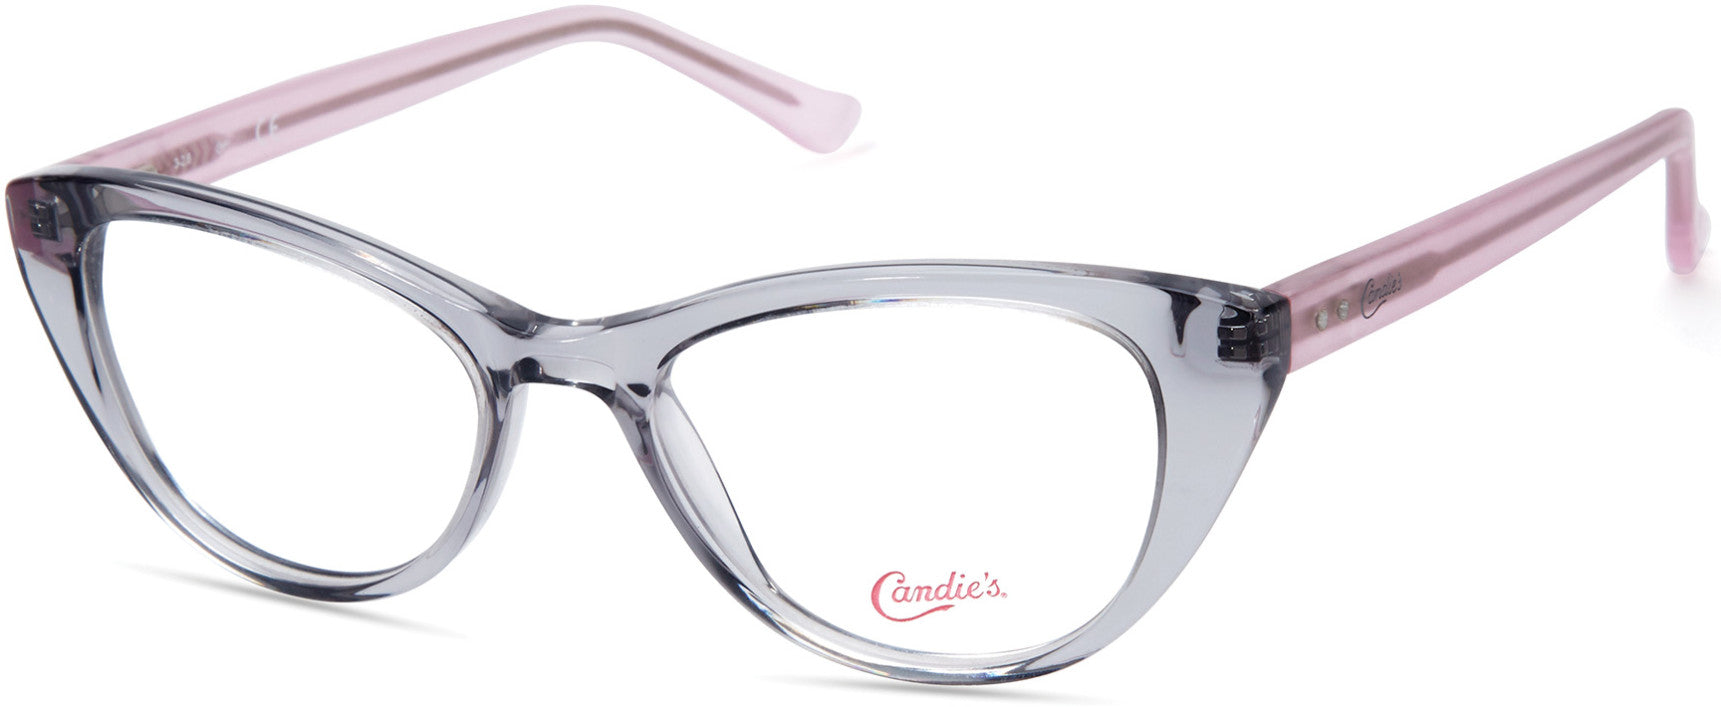 Candies CA0178 Cat Eyeglasses 020-020 - Grey